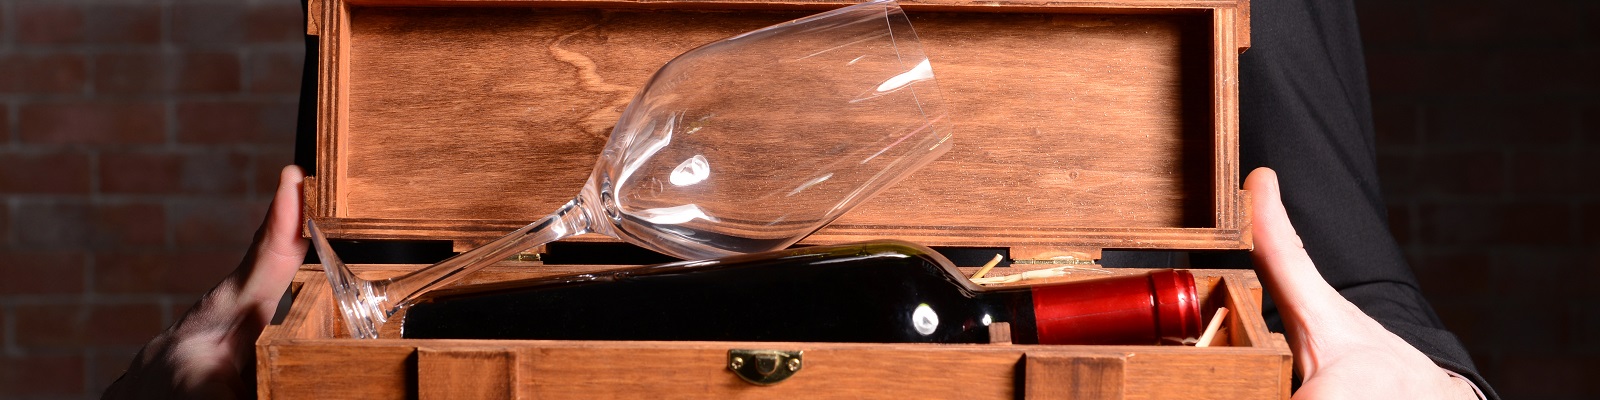 Holzschatulle mit Wein